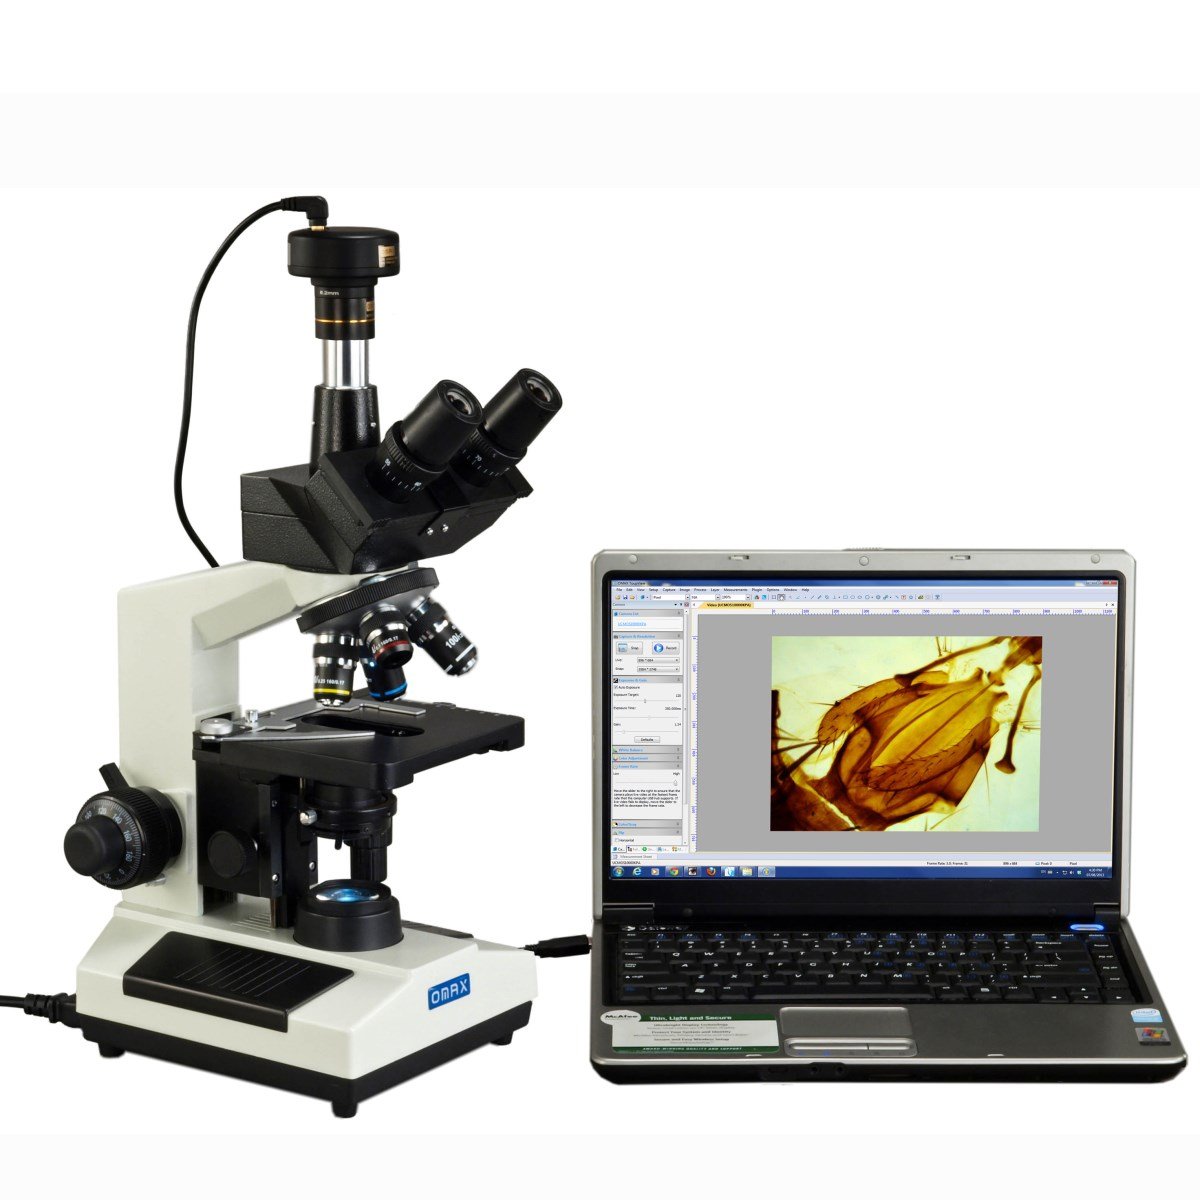 数量限定価格 OMAX 1.3MPデジタルカメラと40X-2000X位相コントラスト三眼鏡化合物LED顕微鏡 並行輸入品 顕微鏡 